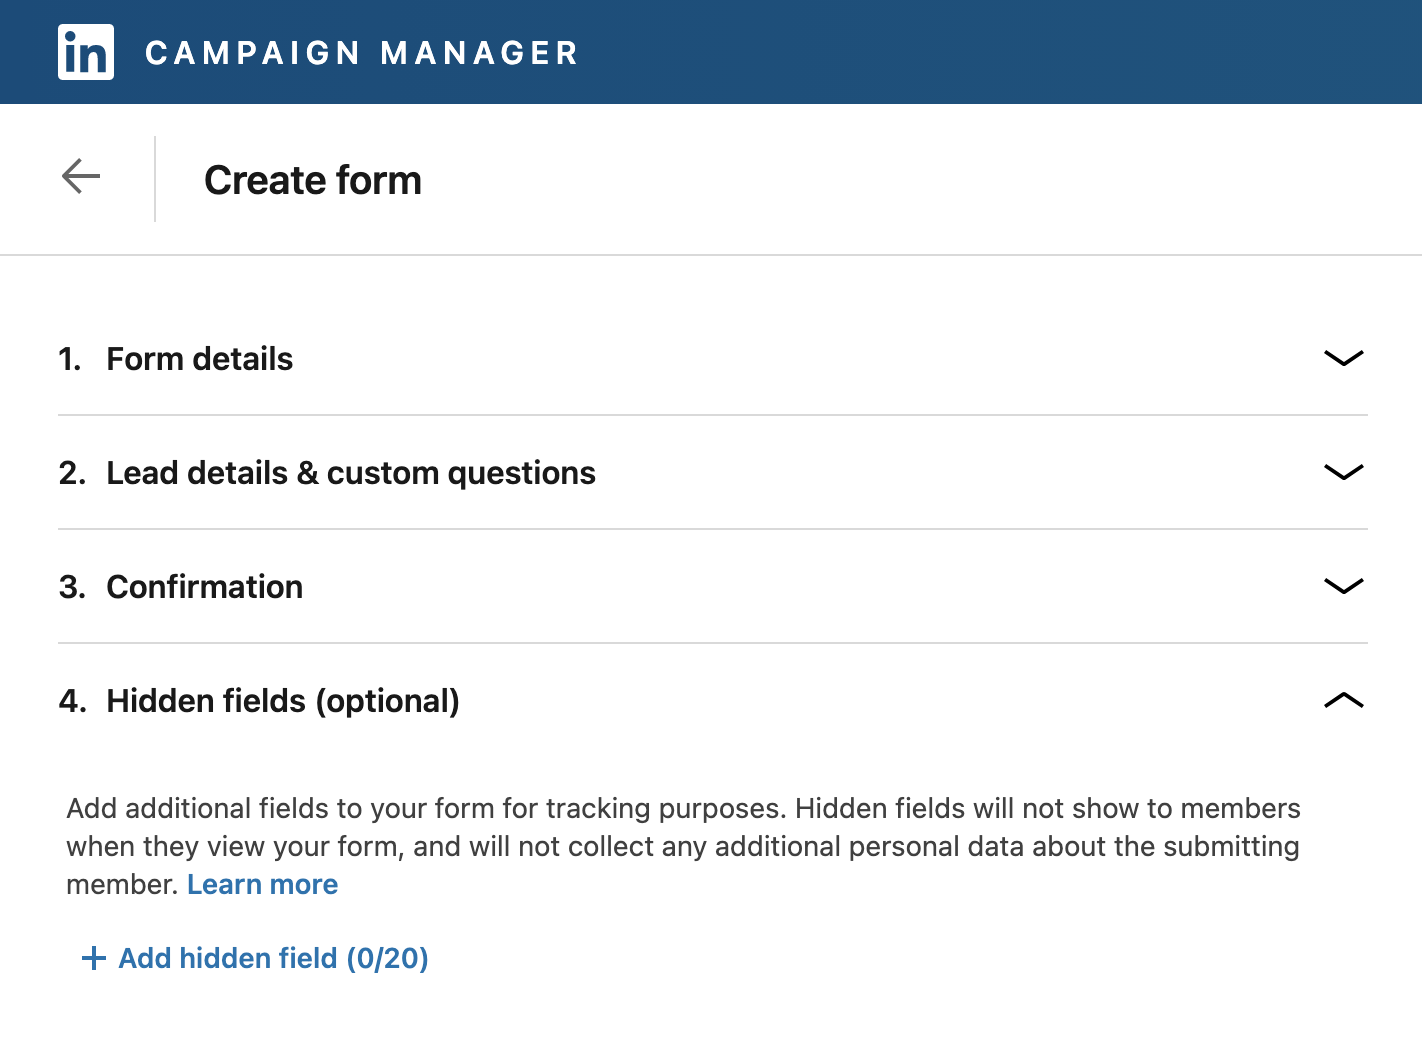 A digital marketing agency shows how to set up hidden fields in LinkedIn Lead Gen form